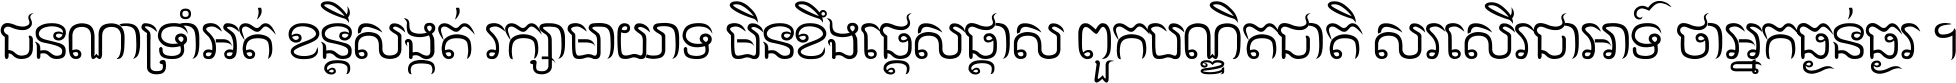 Khmer CN hand